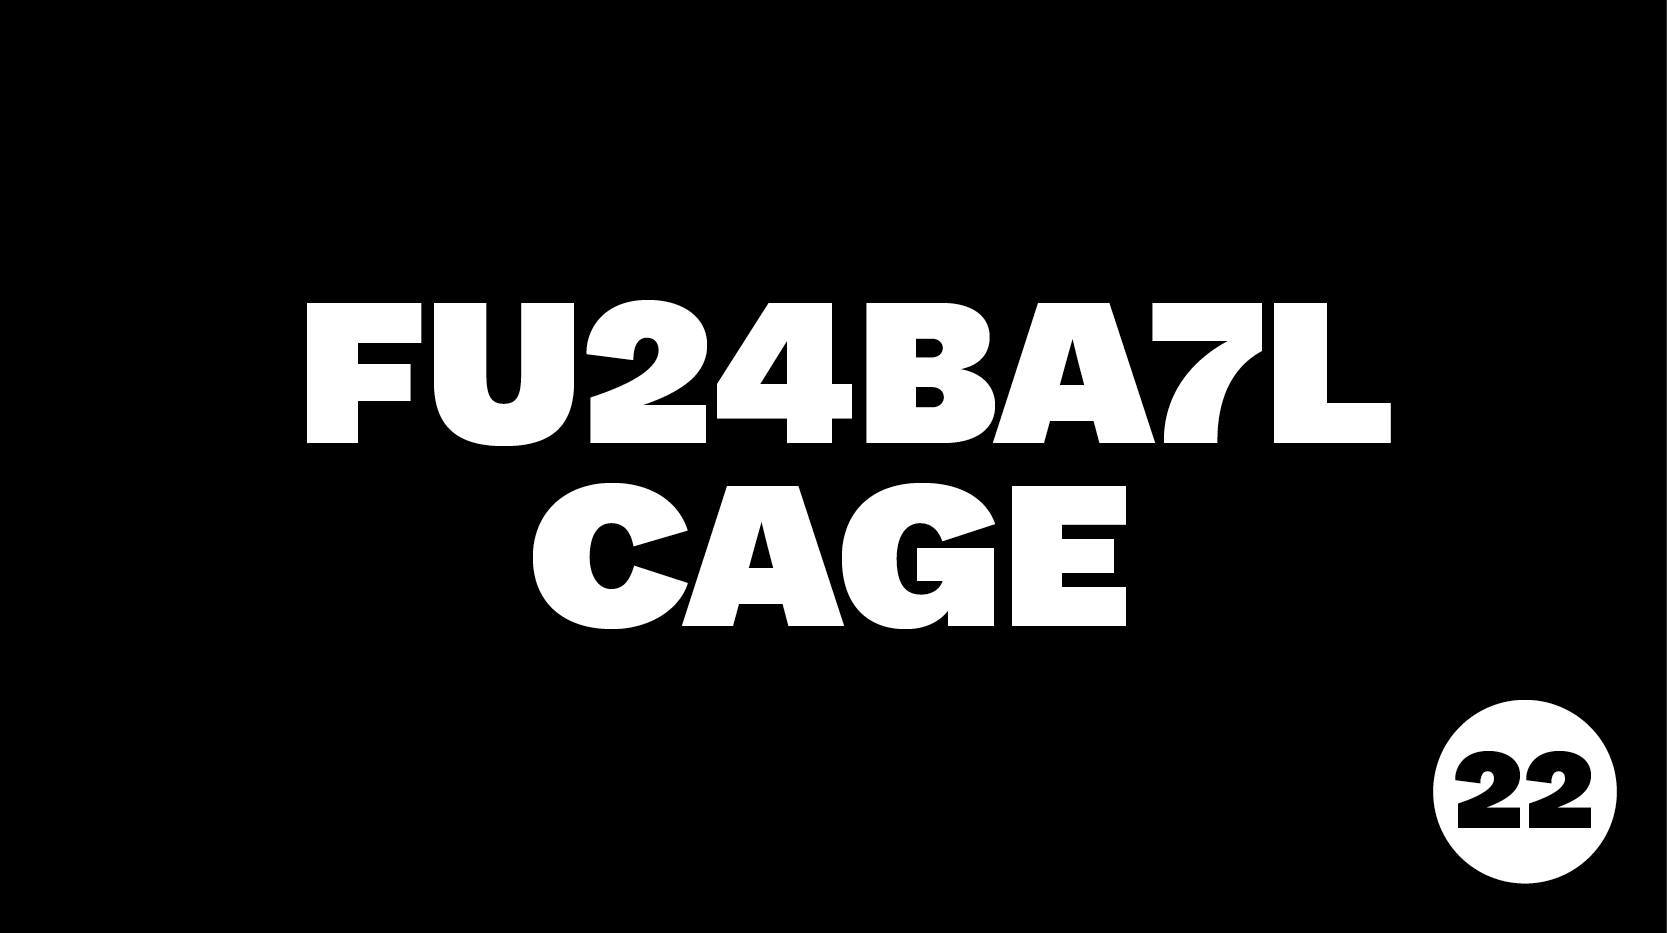 FU24BA7L Cage